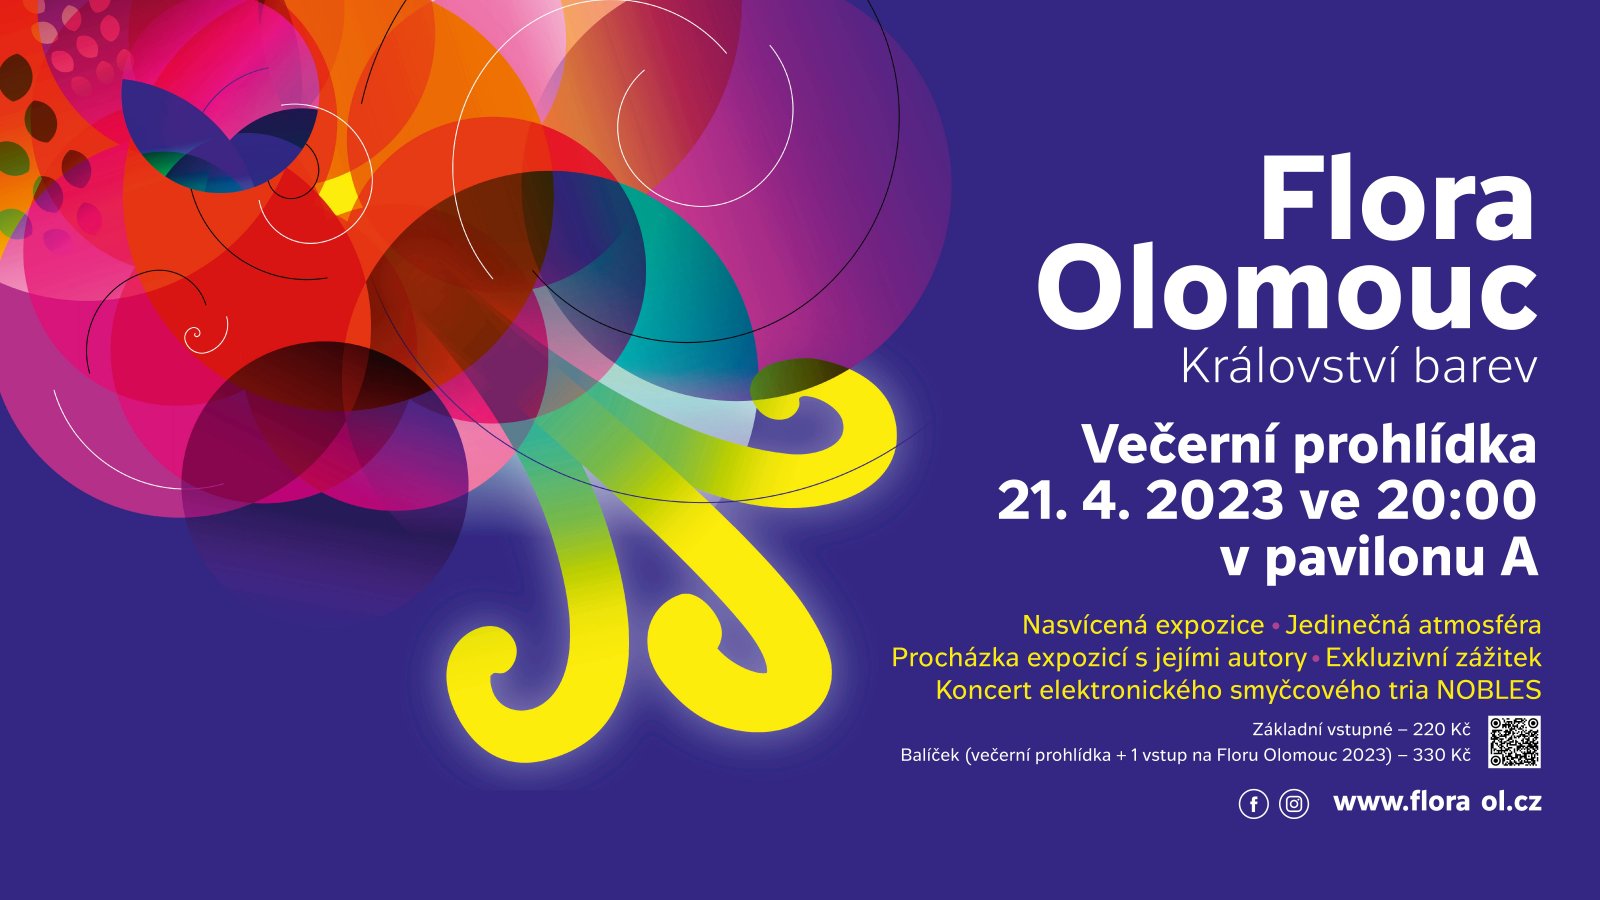 Večerní prohlídka Flora Olomouc 2023